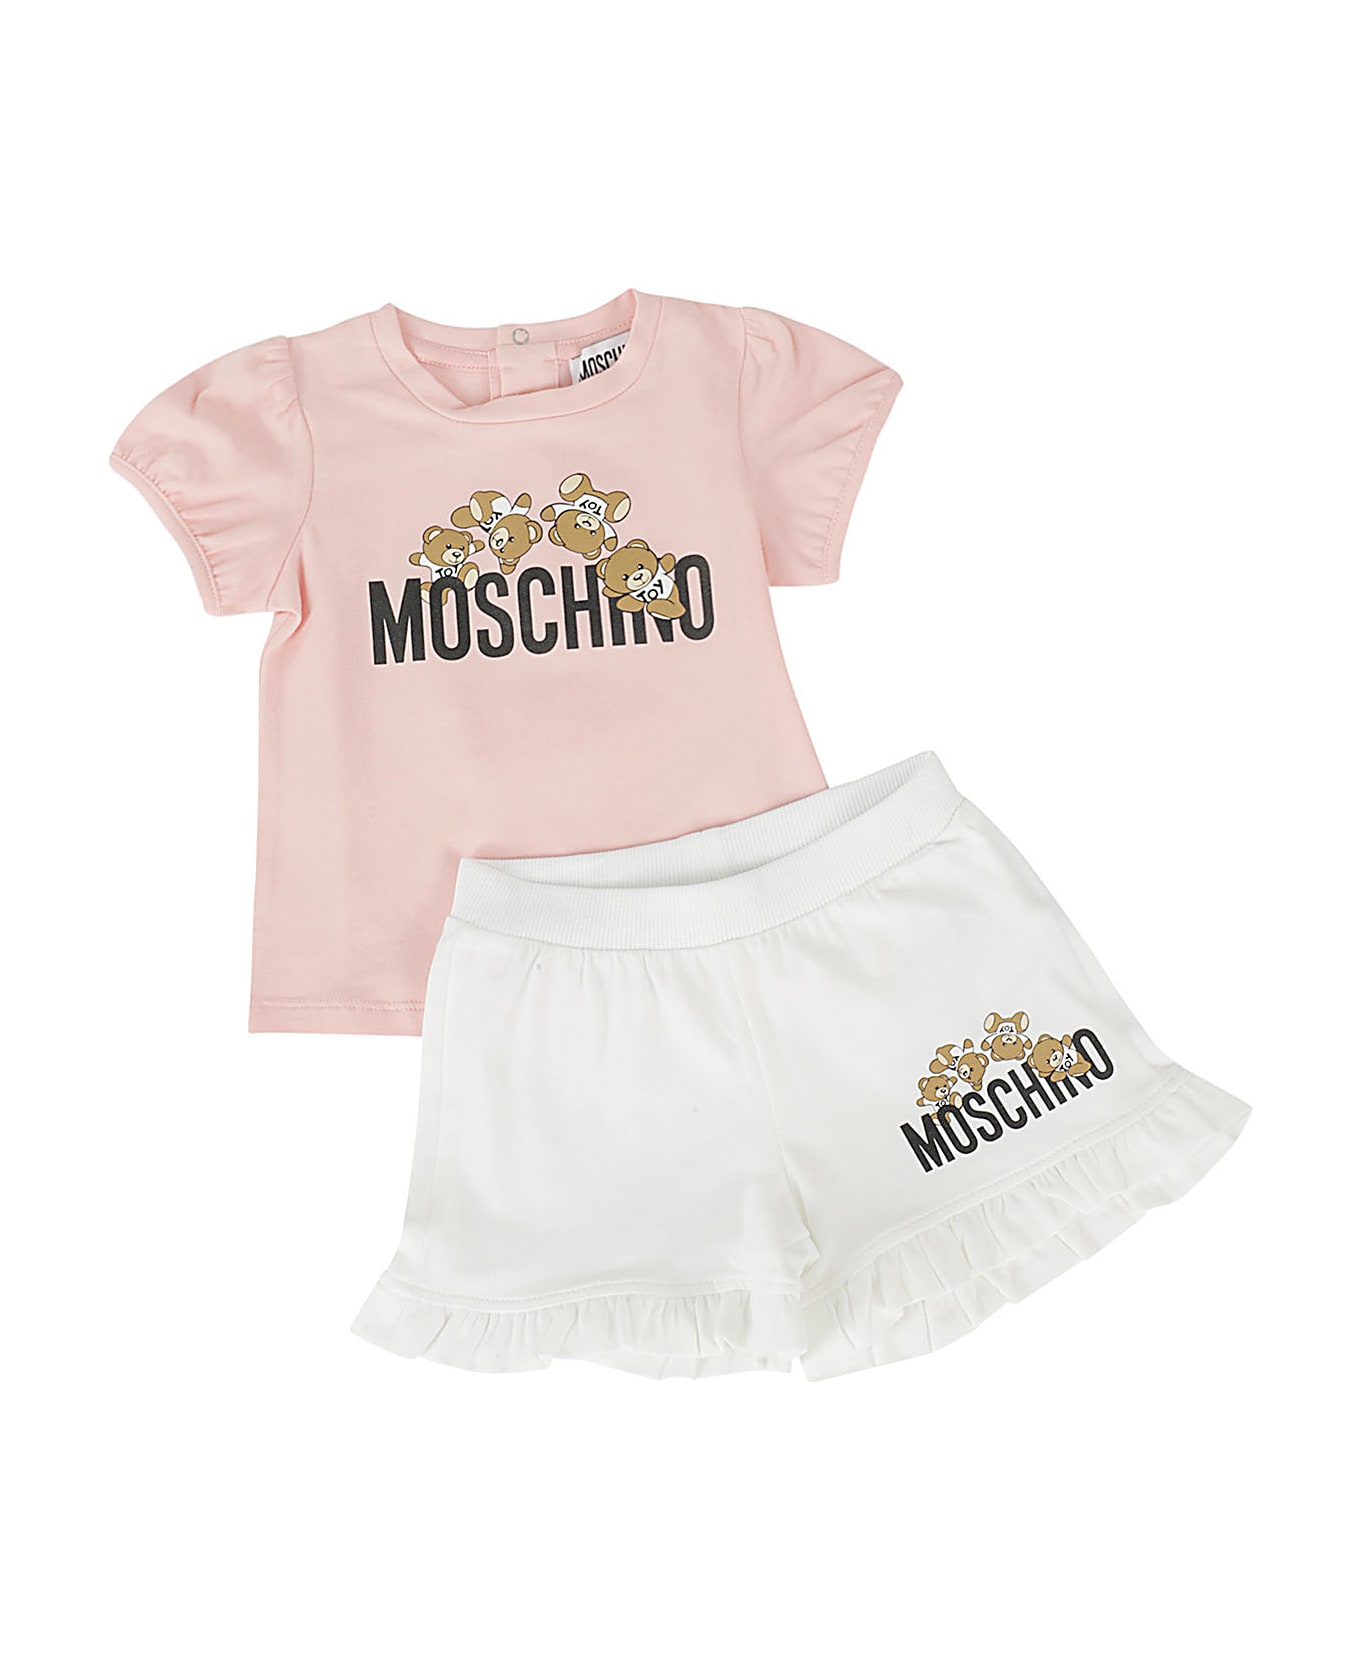 Moschino 2 Pz Tshirt E Shorts - Sugar Rose